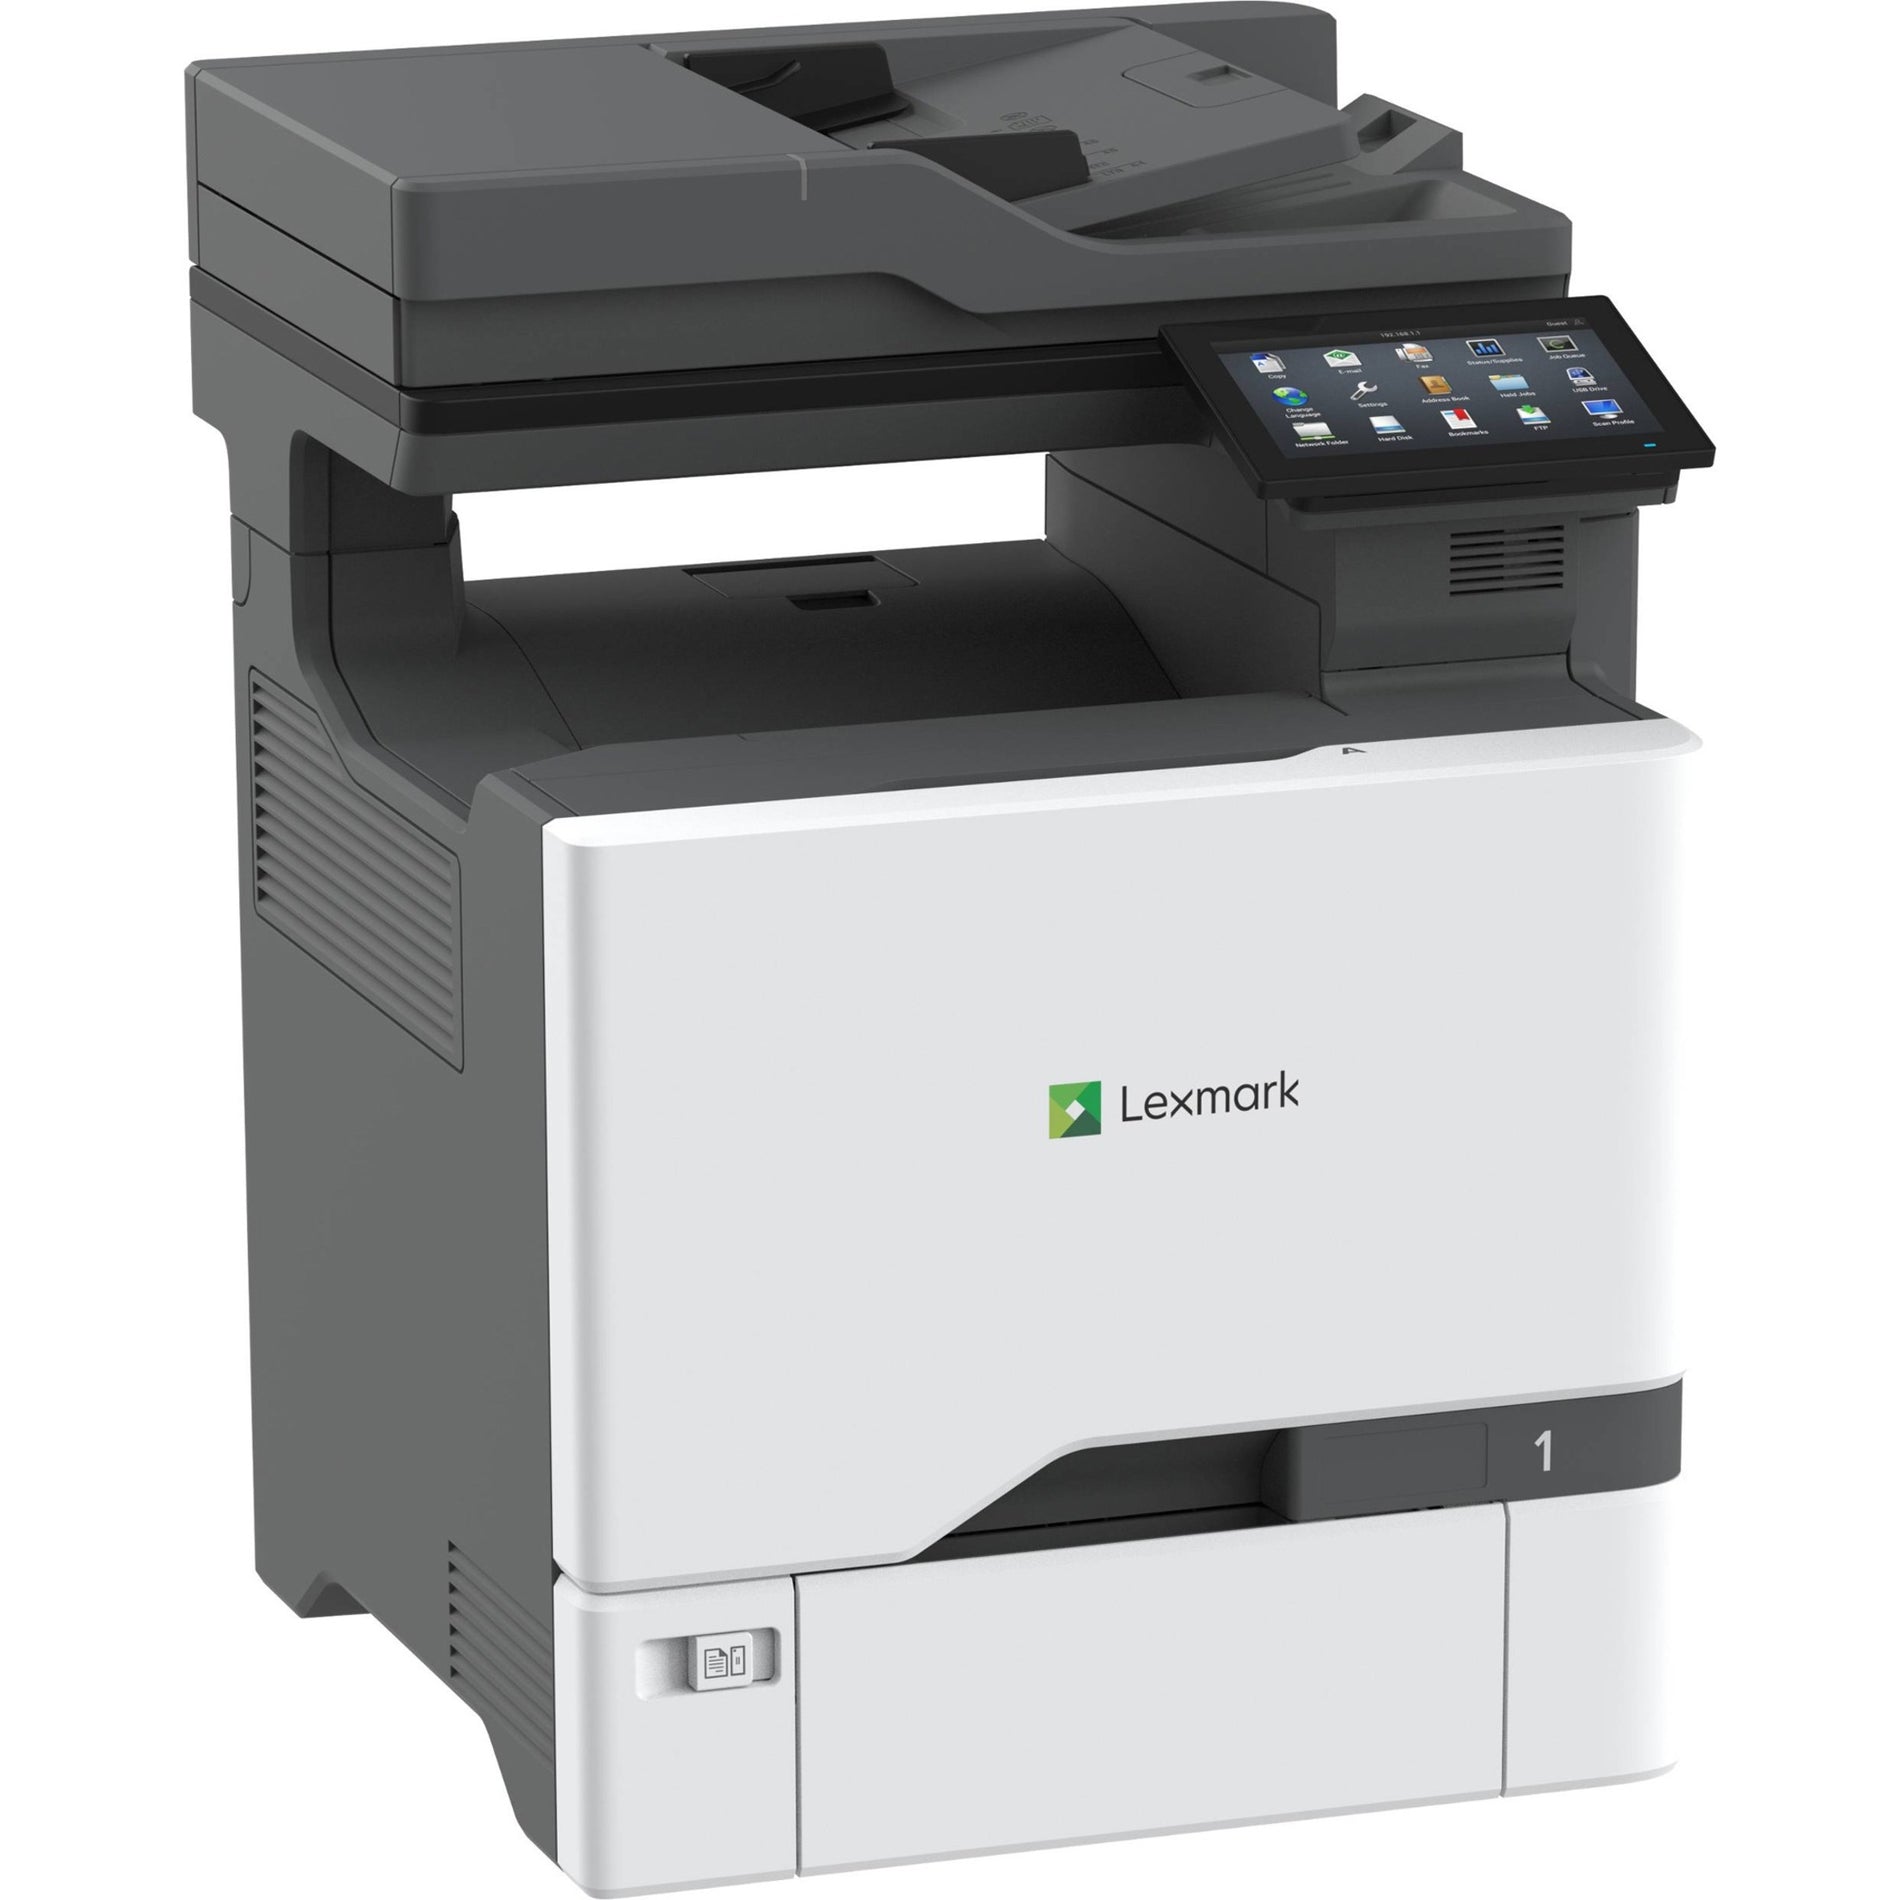 Impresora multifunción láser a color Lexmark 47C9500 CX730de Impresión dúplex automática Velocidad de impresión de 42 ppm Resolución de 2400 x 600 ppp Marca: Lexmark